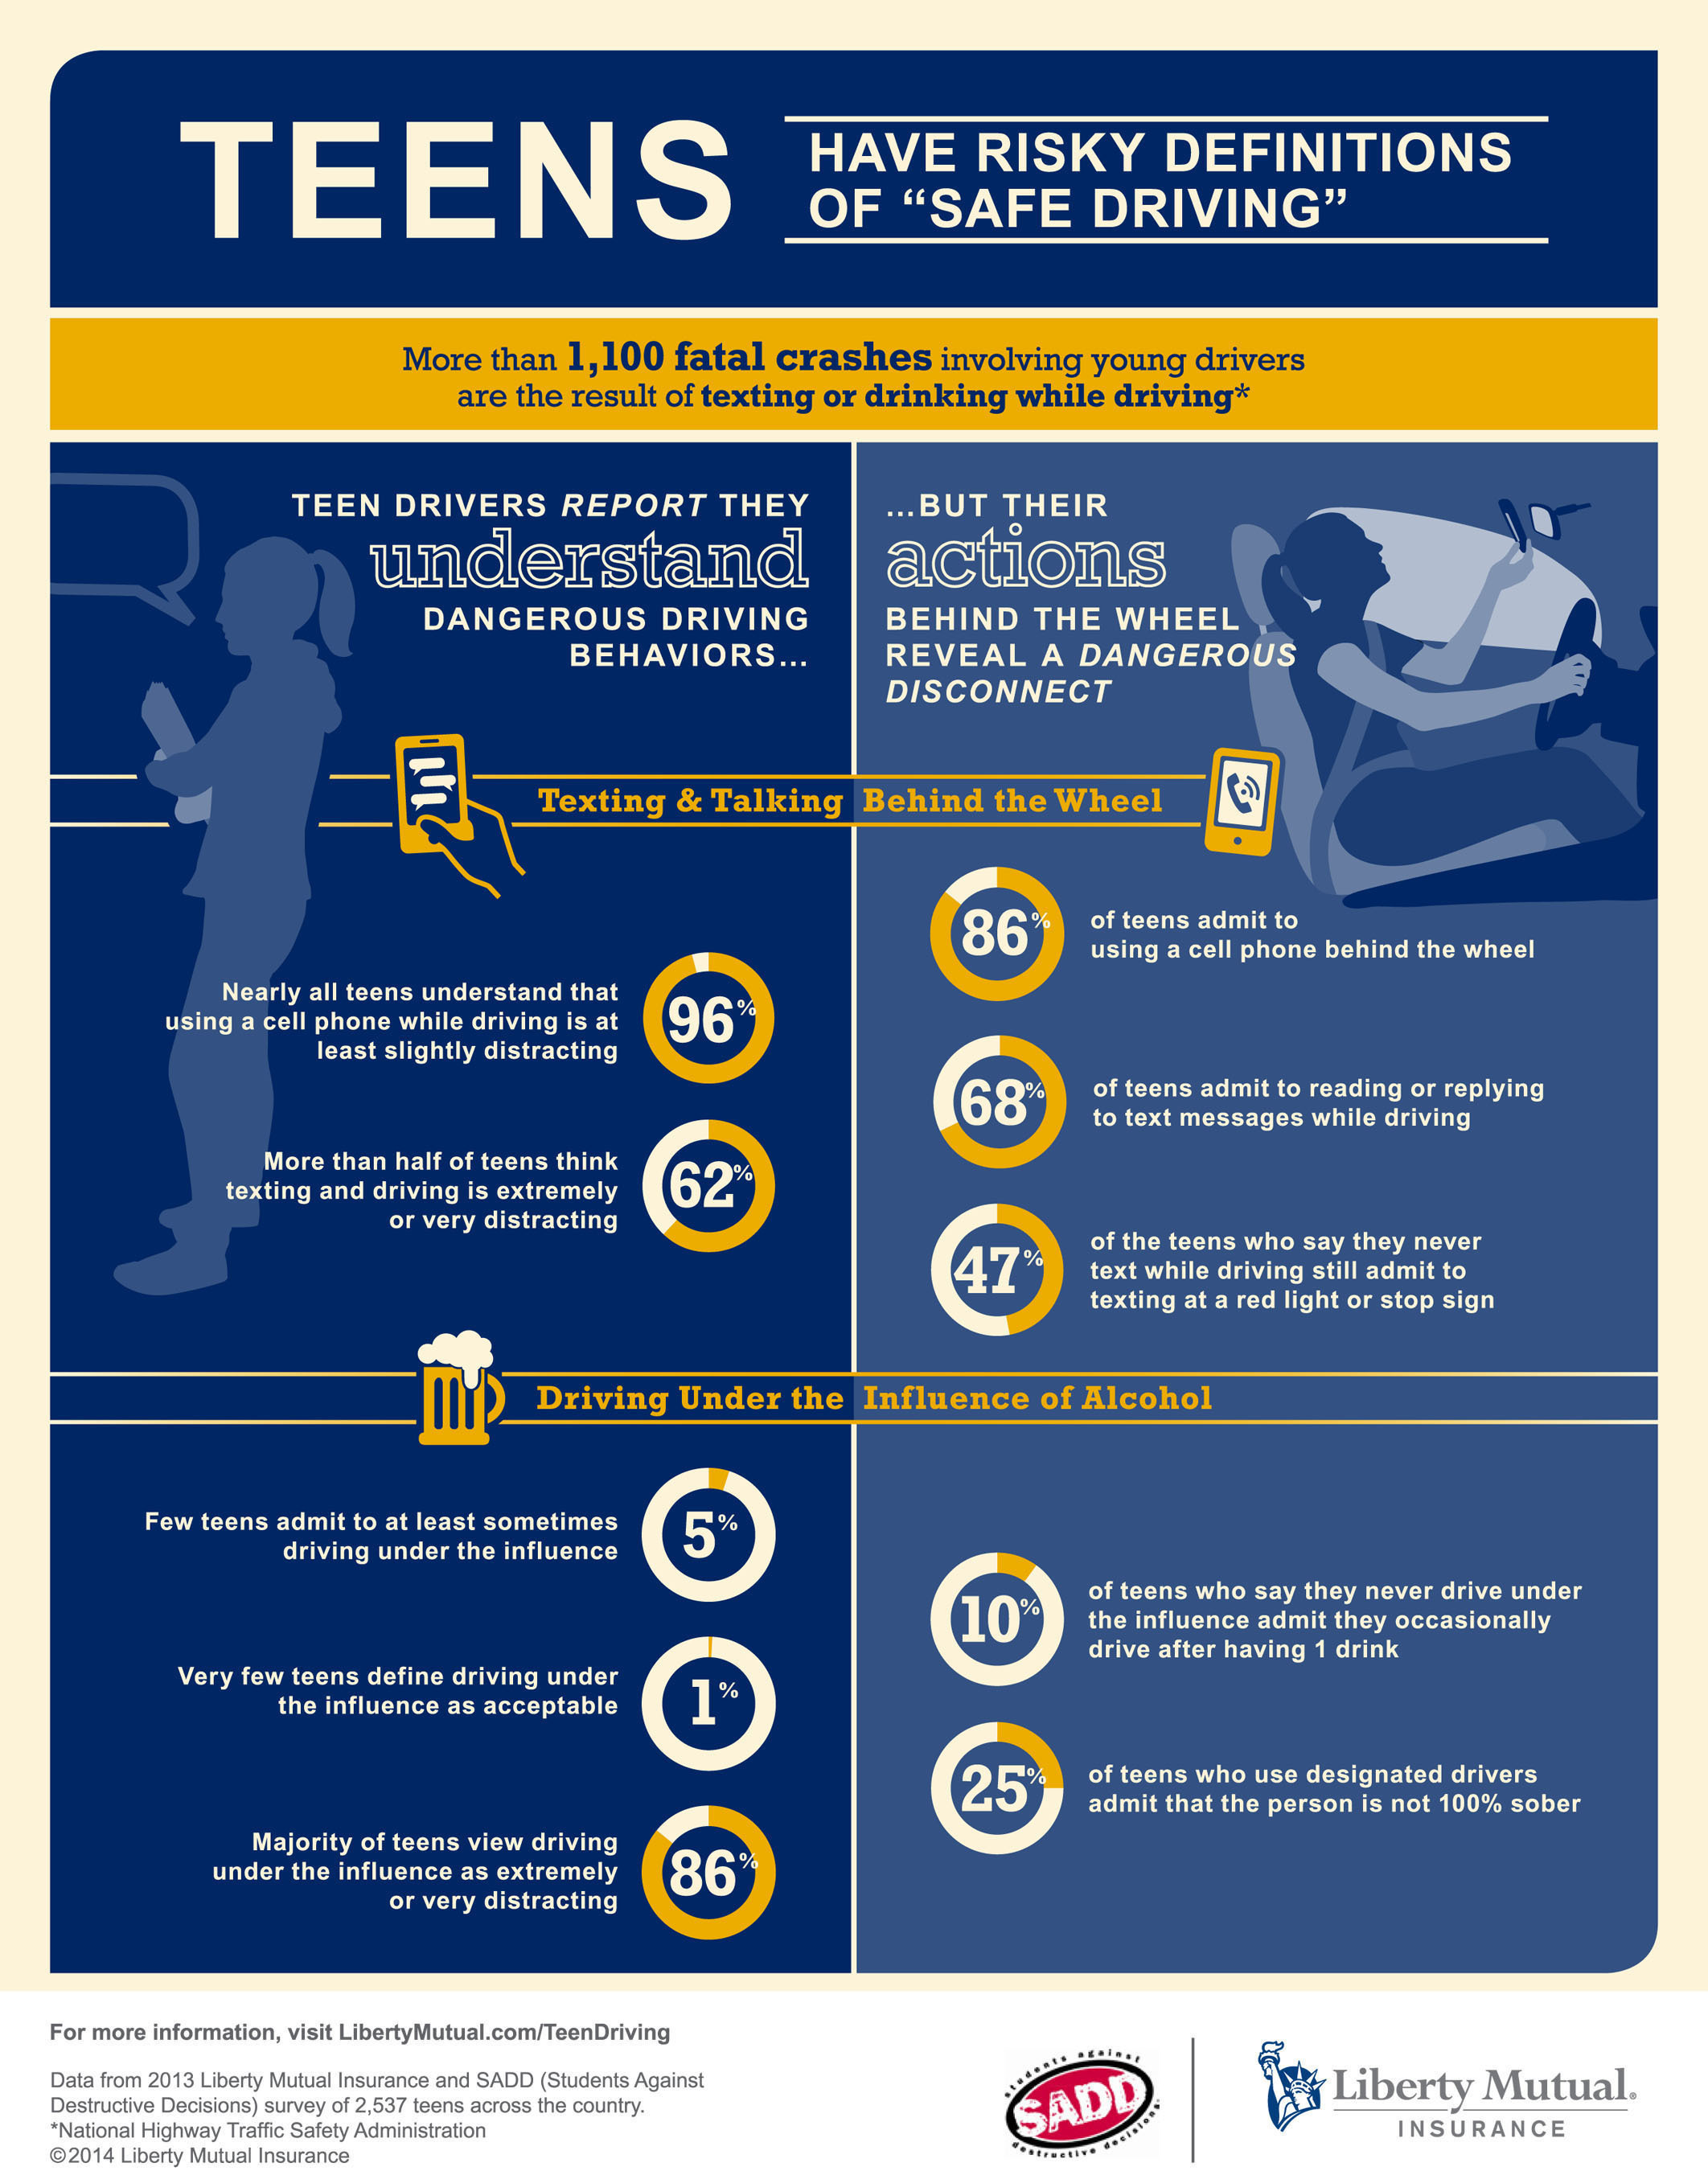 Liberty Mutual Insurance and SADD Teen Driving Infographic. (PRNewsFoto/Liberty Mutual) (PRNewsFoto/LIBERTY MUTUAL)